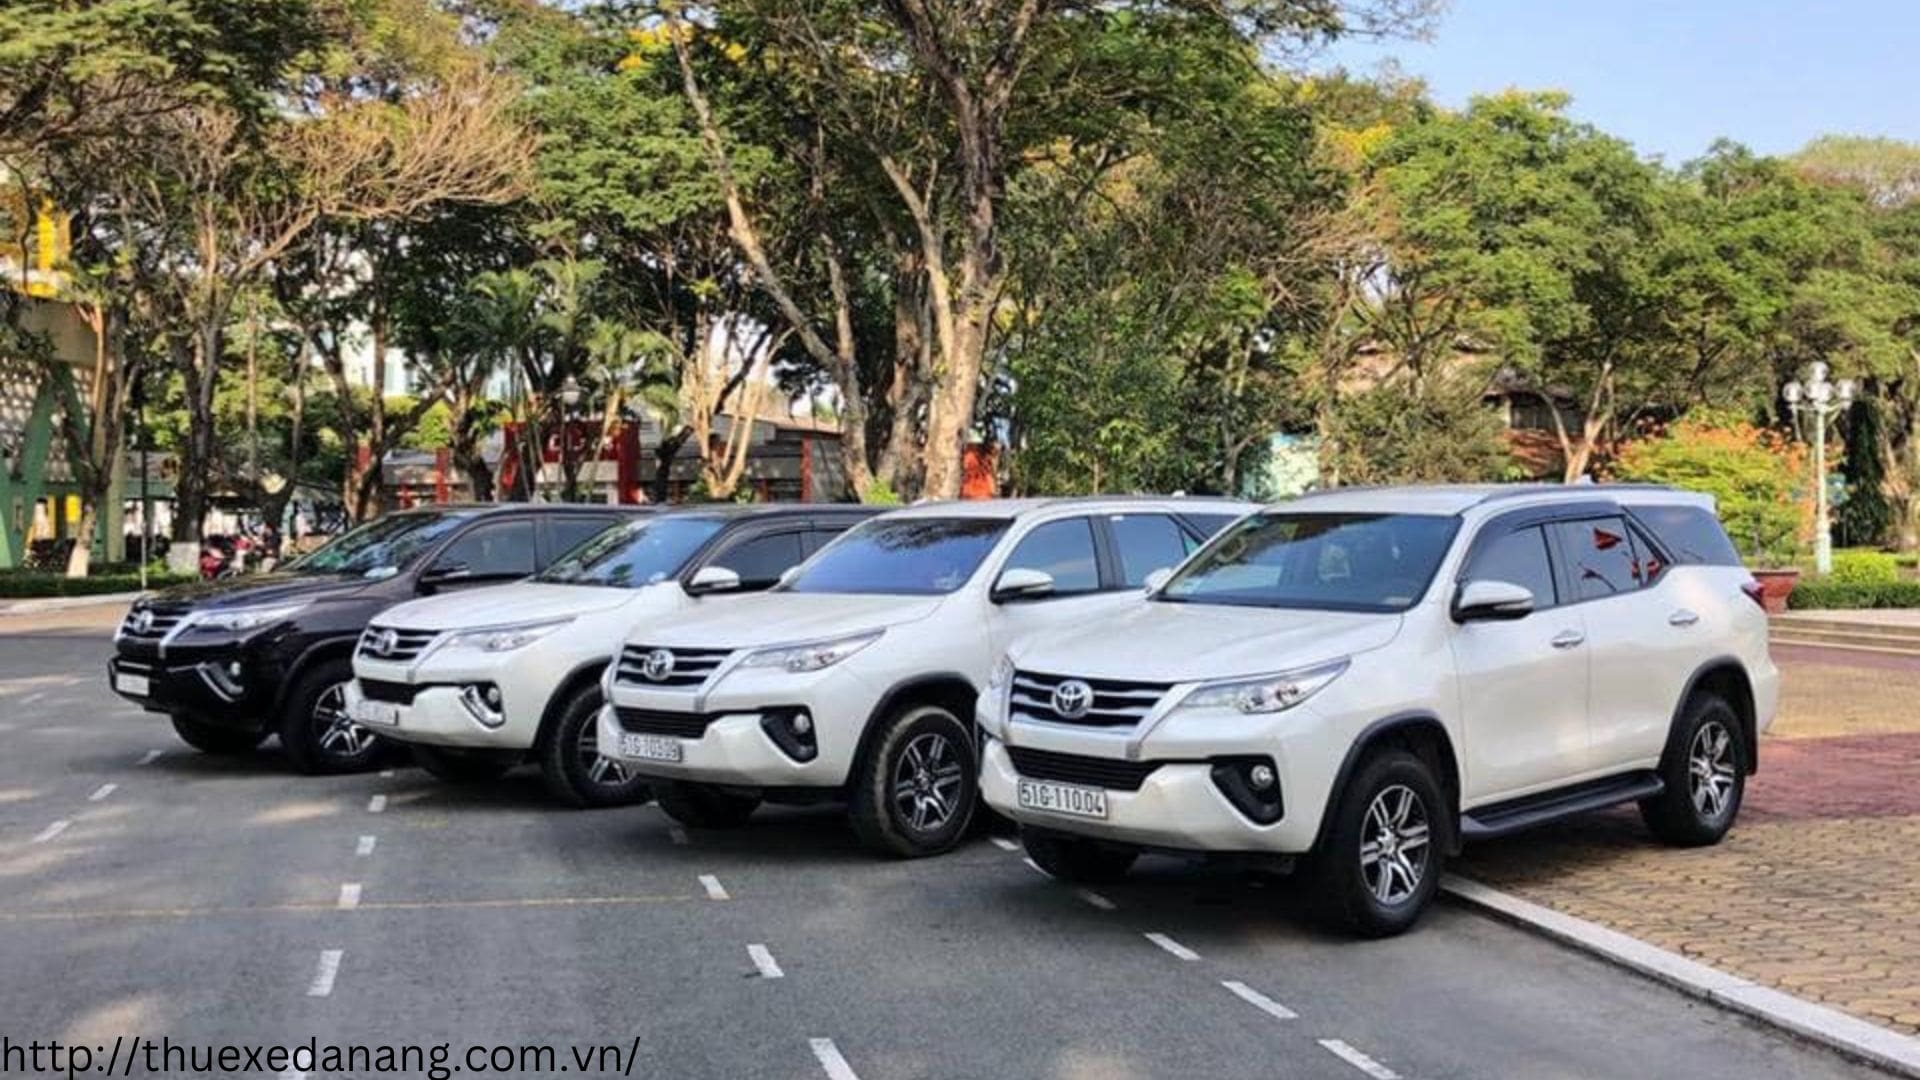 Công Ty Vũ Khoa - Công ty cho thuê xe tại Đà Nẵng